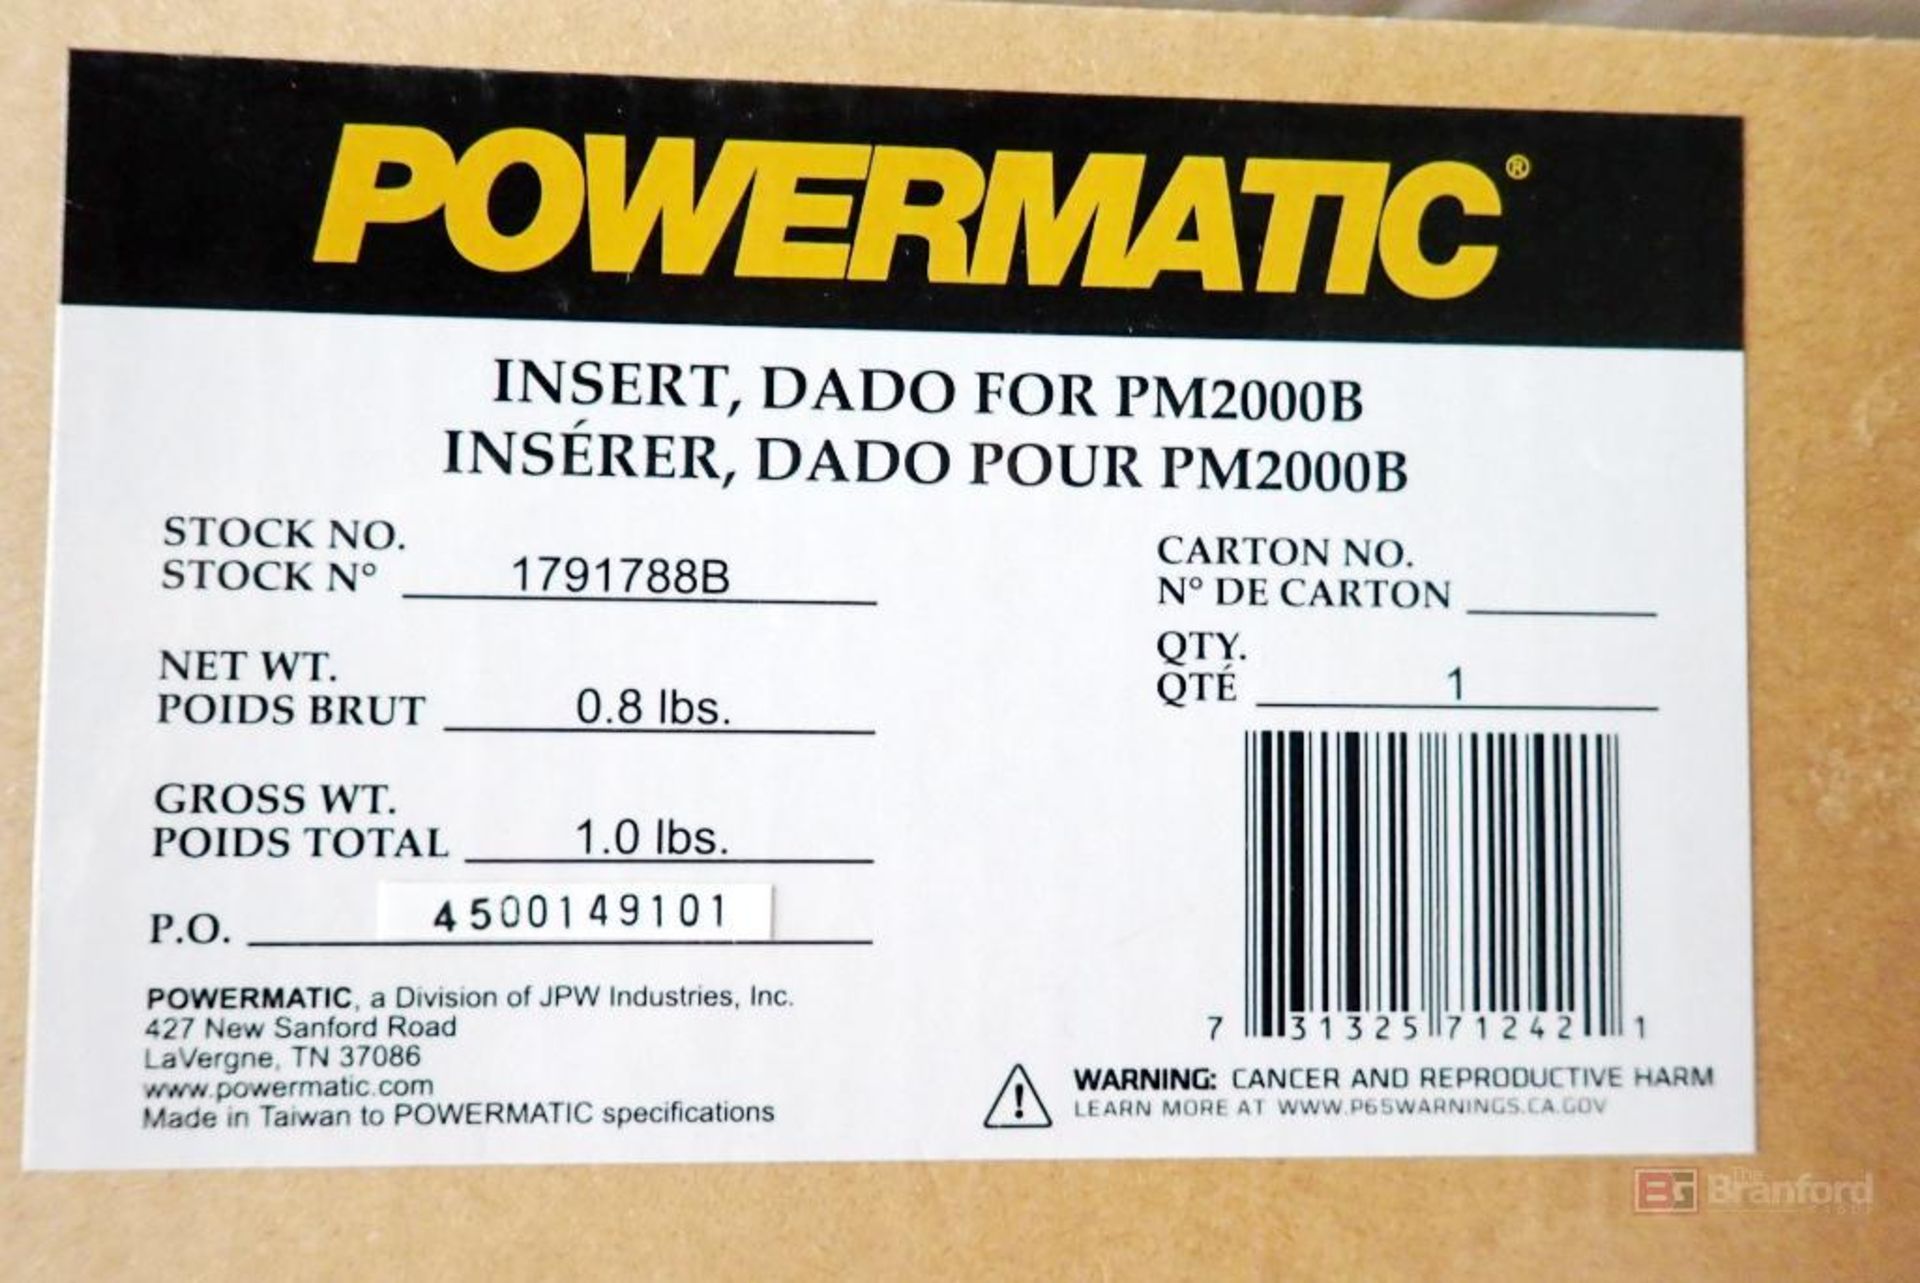 (3) Powermatic Insert DADO for PM2000B - Image 4 of 4